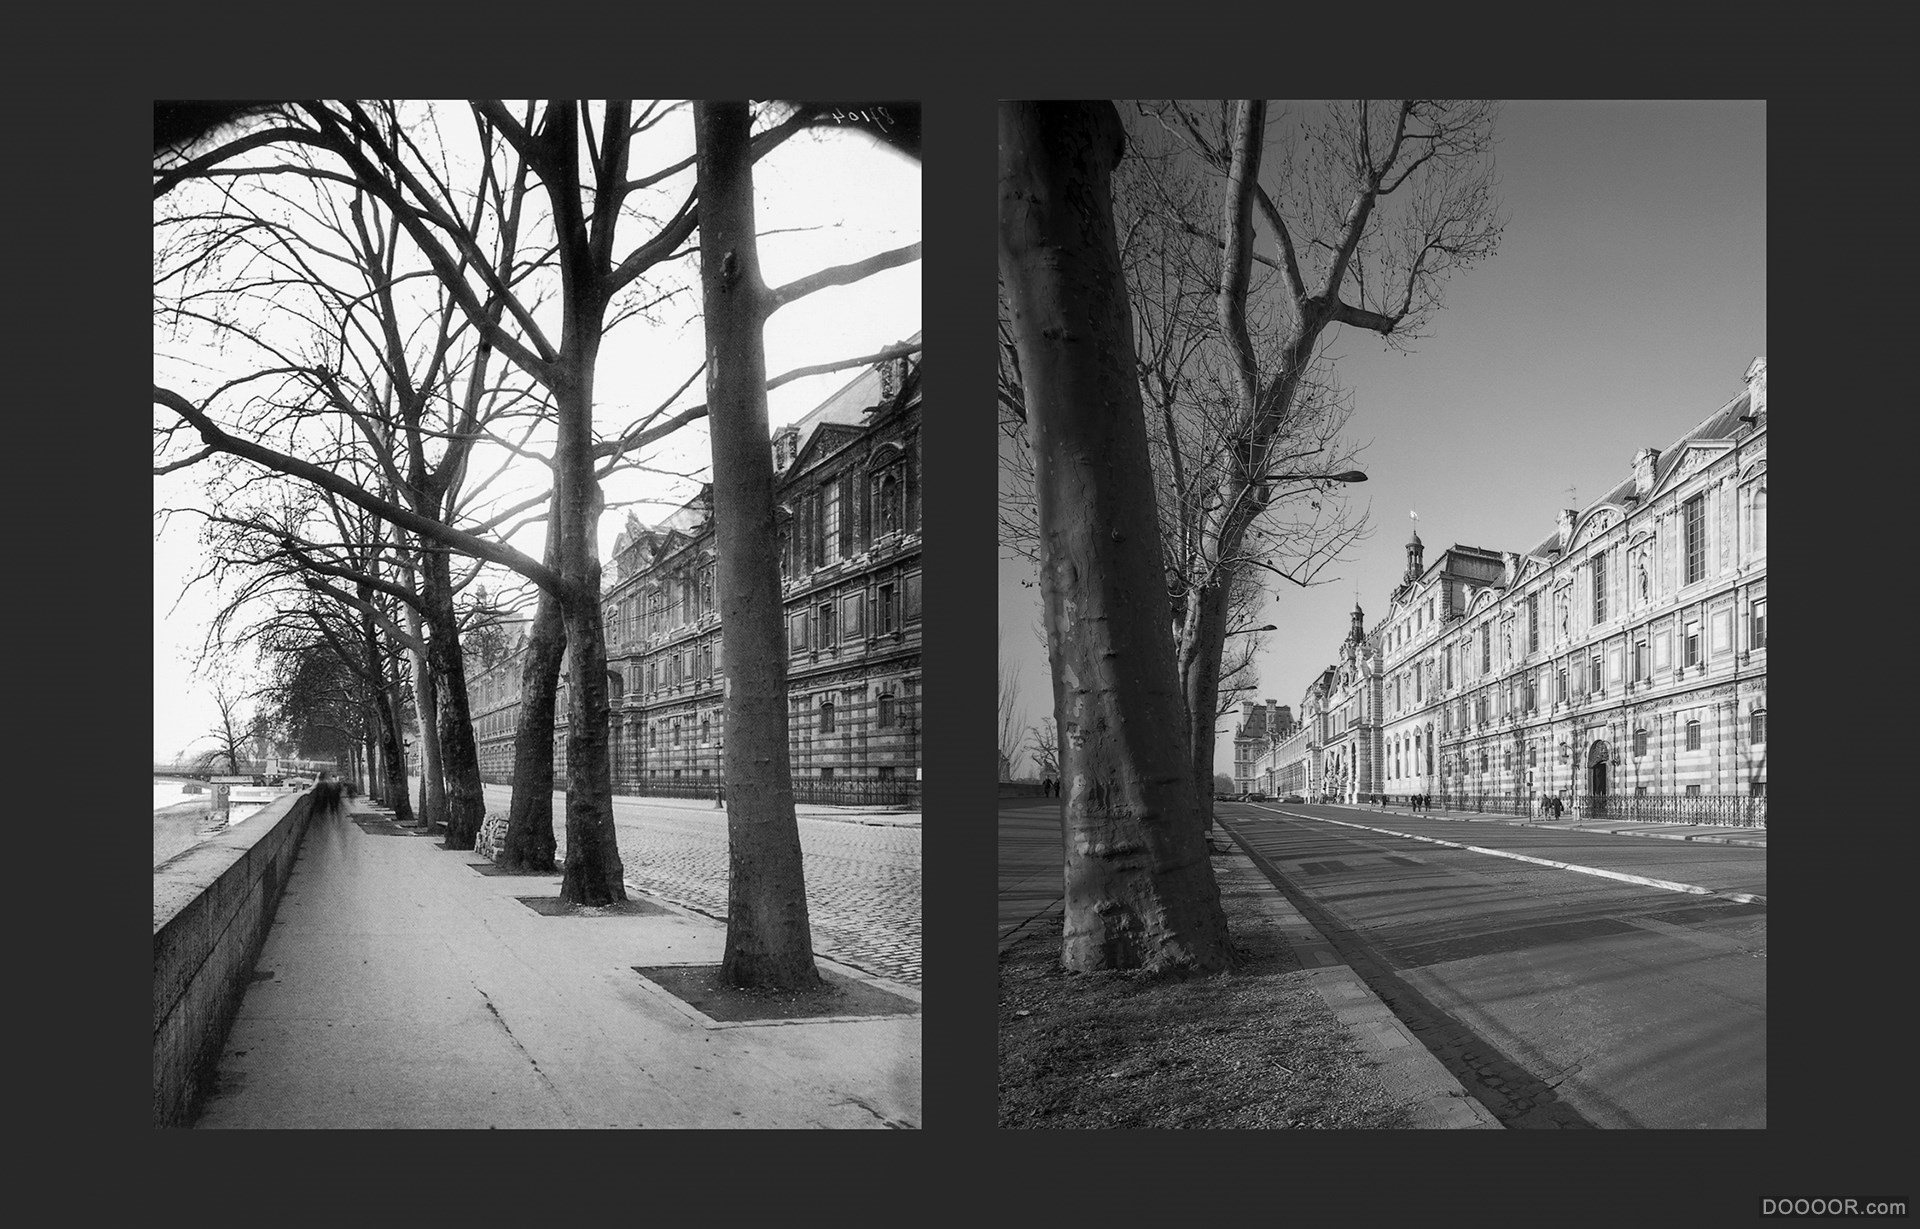 过去与现在-巴黎街头照片对比 [50P] (8).jpg